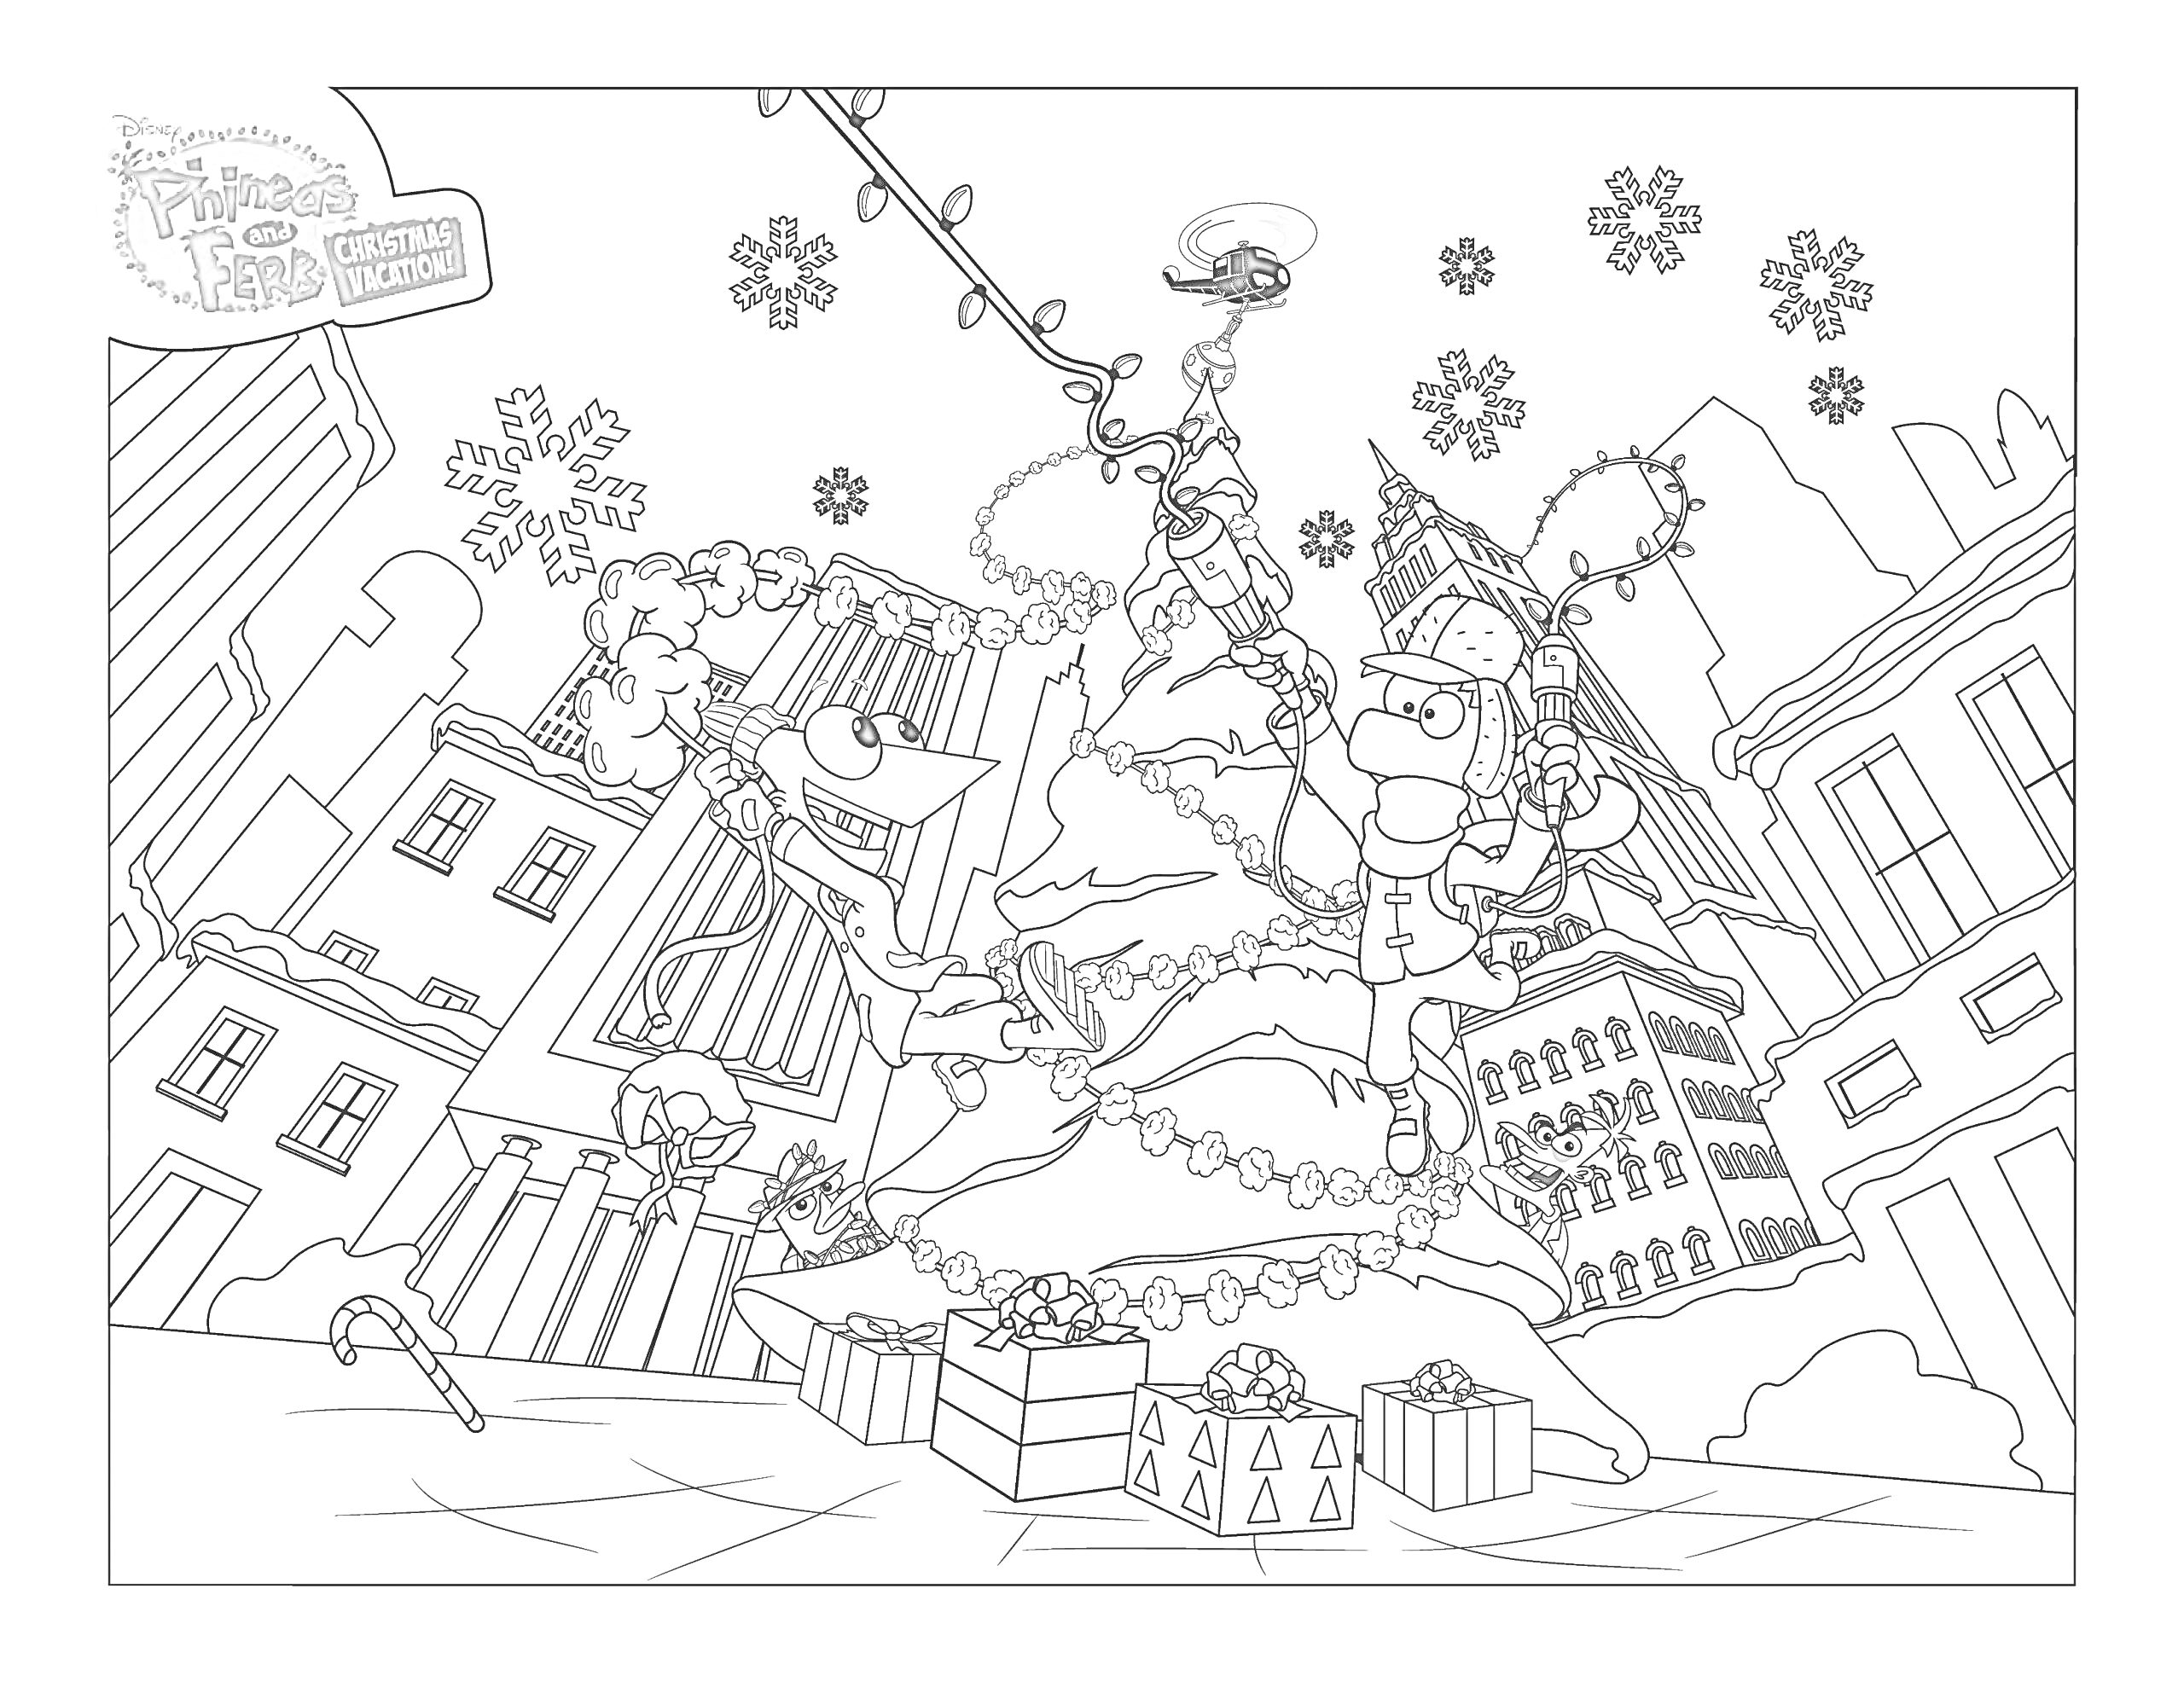 улица с зданиями, Финес и Ферб наряжают новогоднюю елку, подарки, падает снег, гирлянды, летящий Перри-утконос в костюме Санты, деревья и вечернее небо